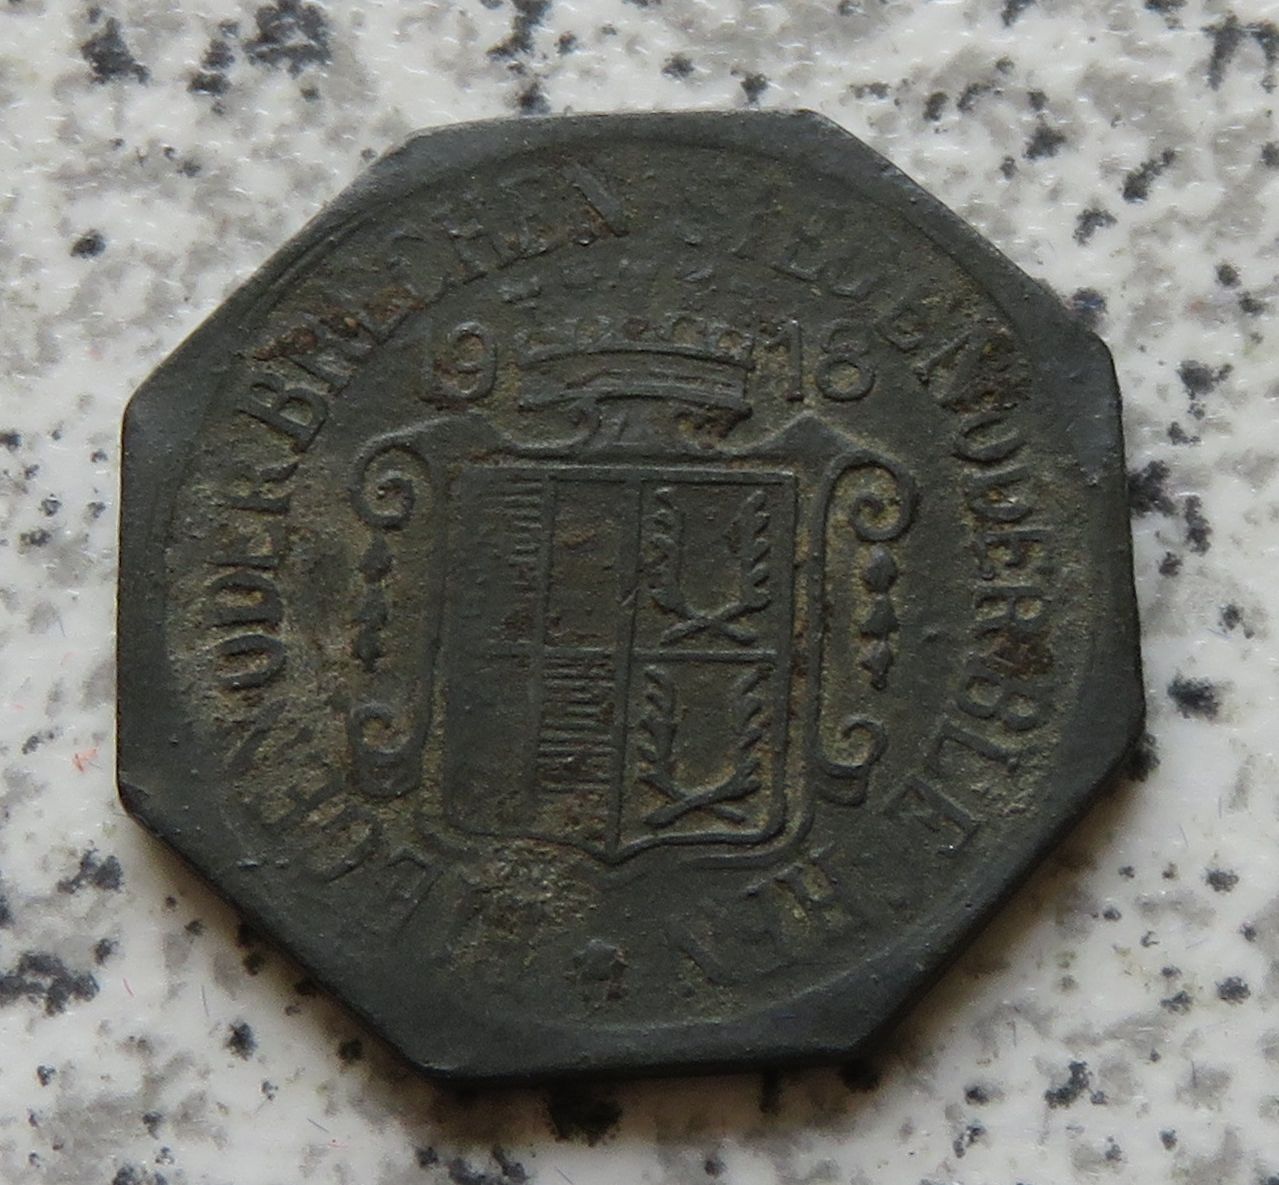  Selb 1 Pfennig 1918   